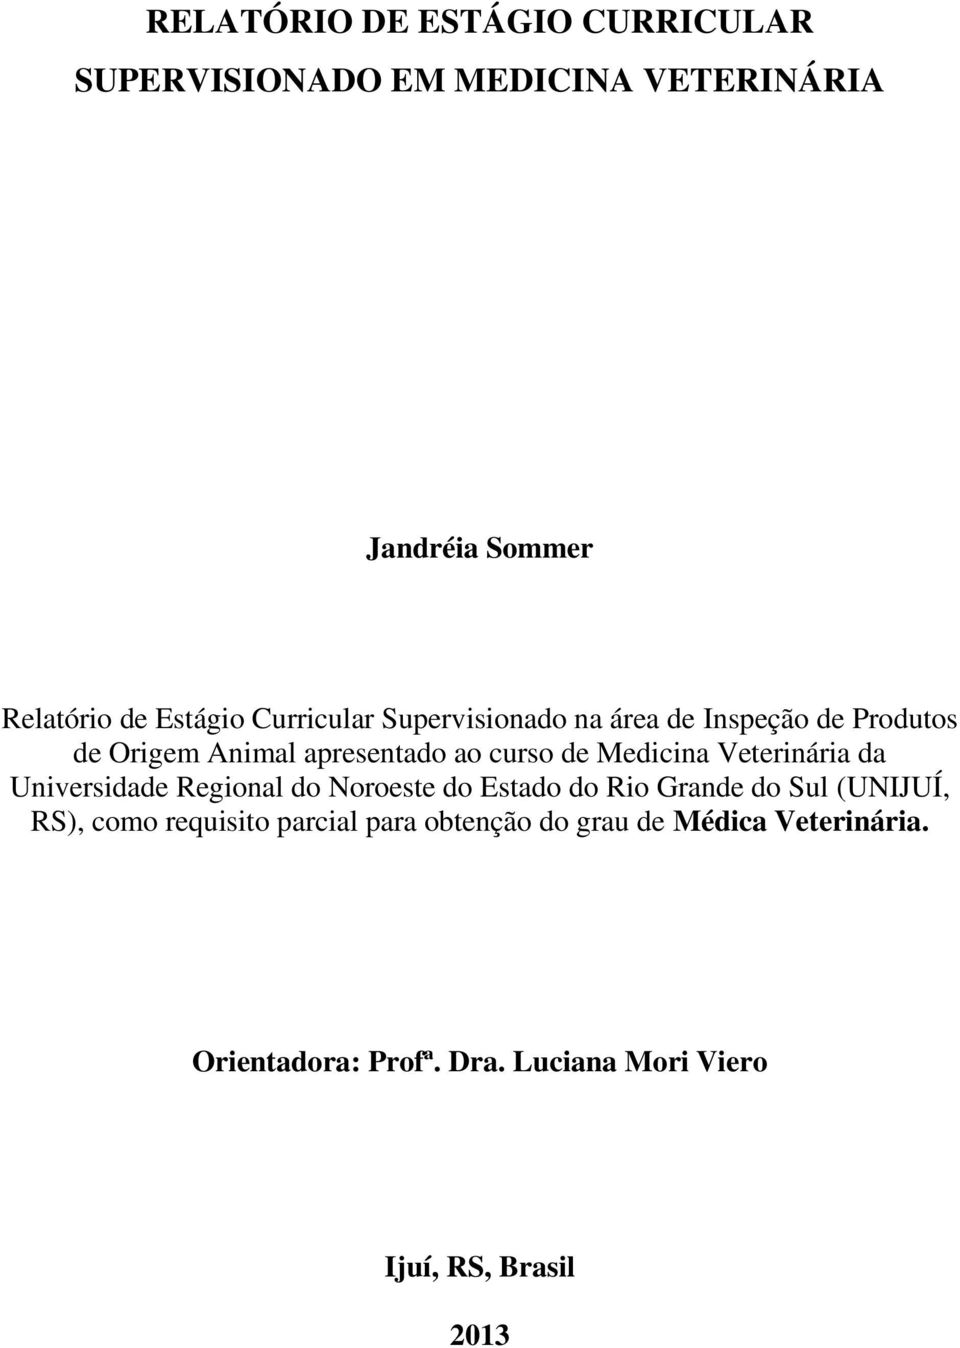 Veterinária da Universidade Regional do Noroeste do Estado do Rio Grande do Sul (UNIJUÍ, RS), como requisito